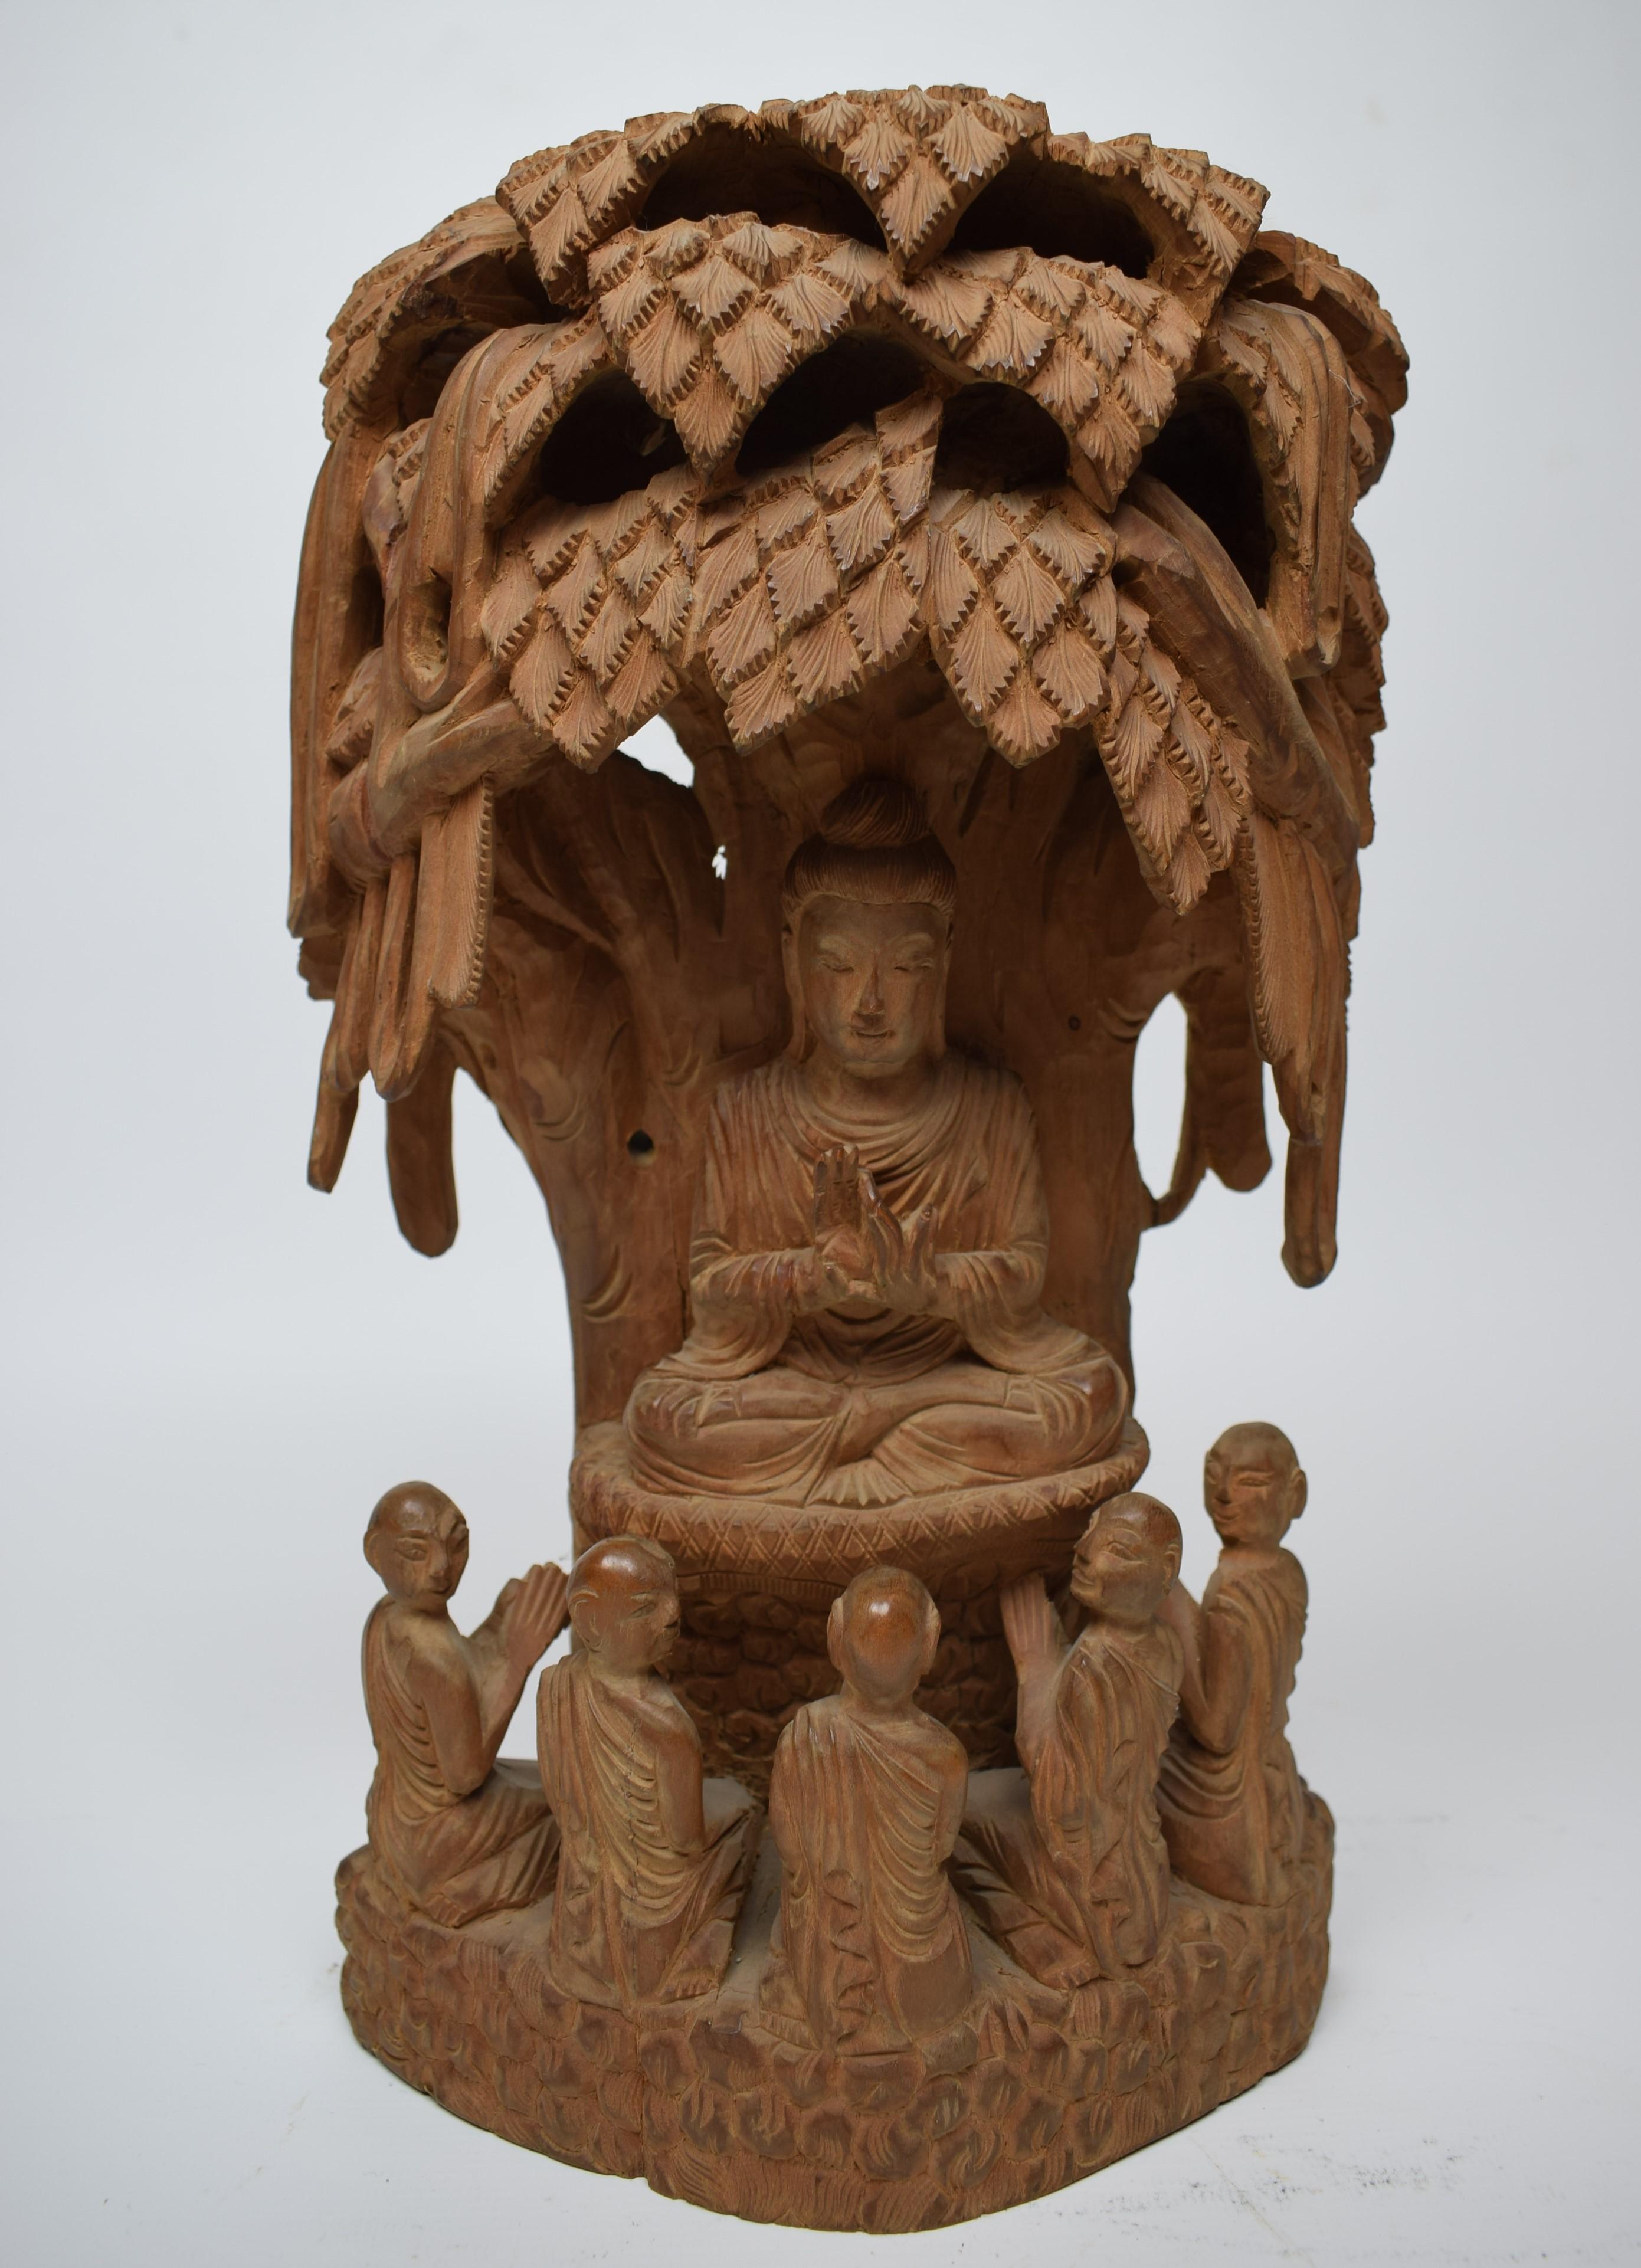 Die Skulptur, die fachmännisch aus duftendem nepalesischem Sandelholz geschnitzt wurde, ist ein Zeugnis der reichen Tradition der Holzschnitzerei in Nepal. Das Medium selbst verleiht dem Kunstwerk eine sinnliche Dimension, wobei das subtile,